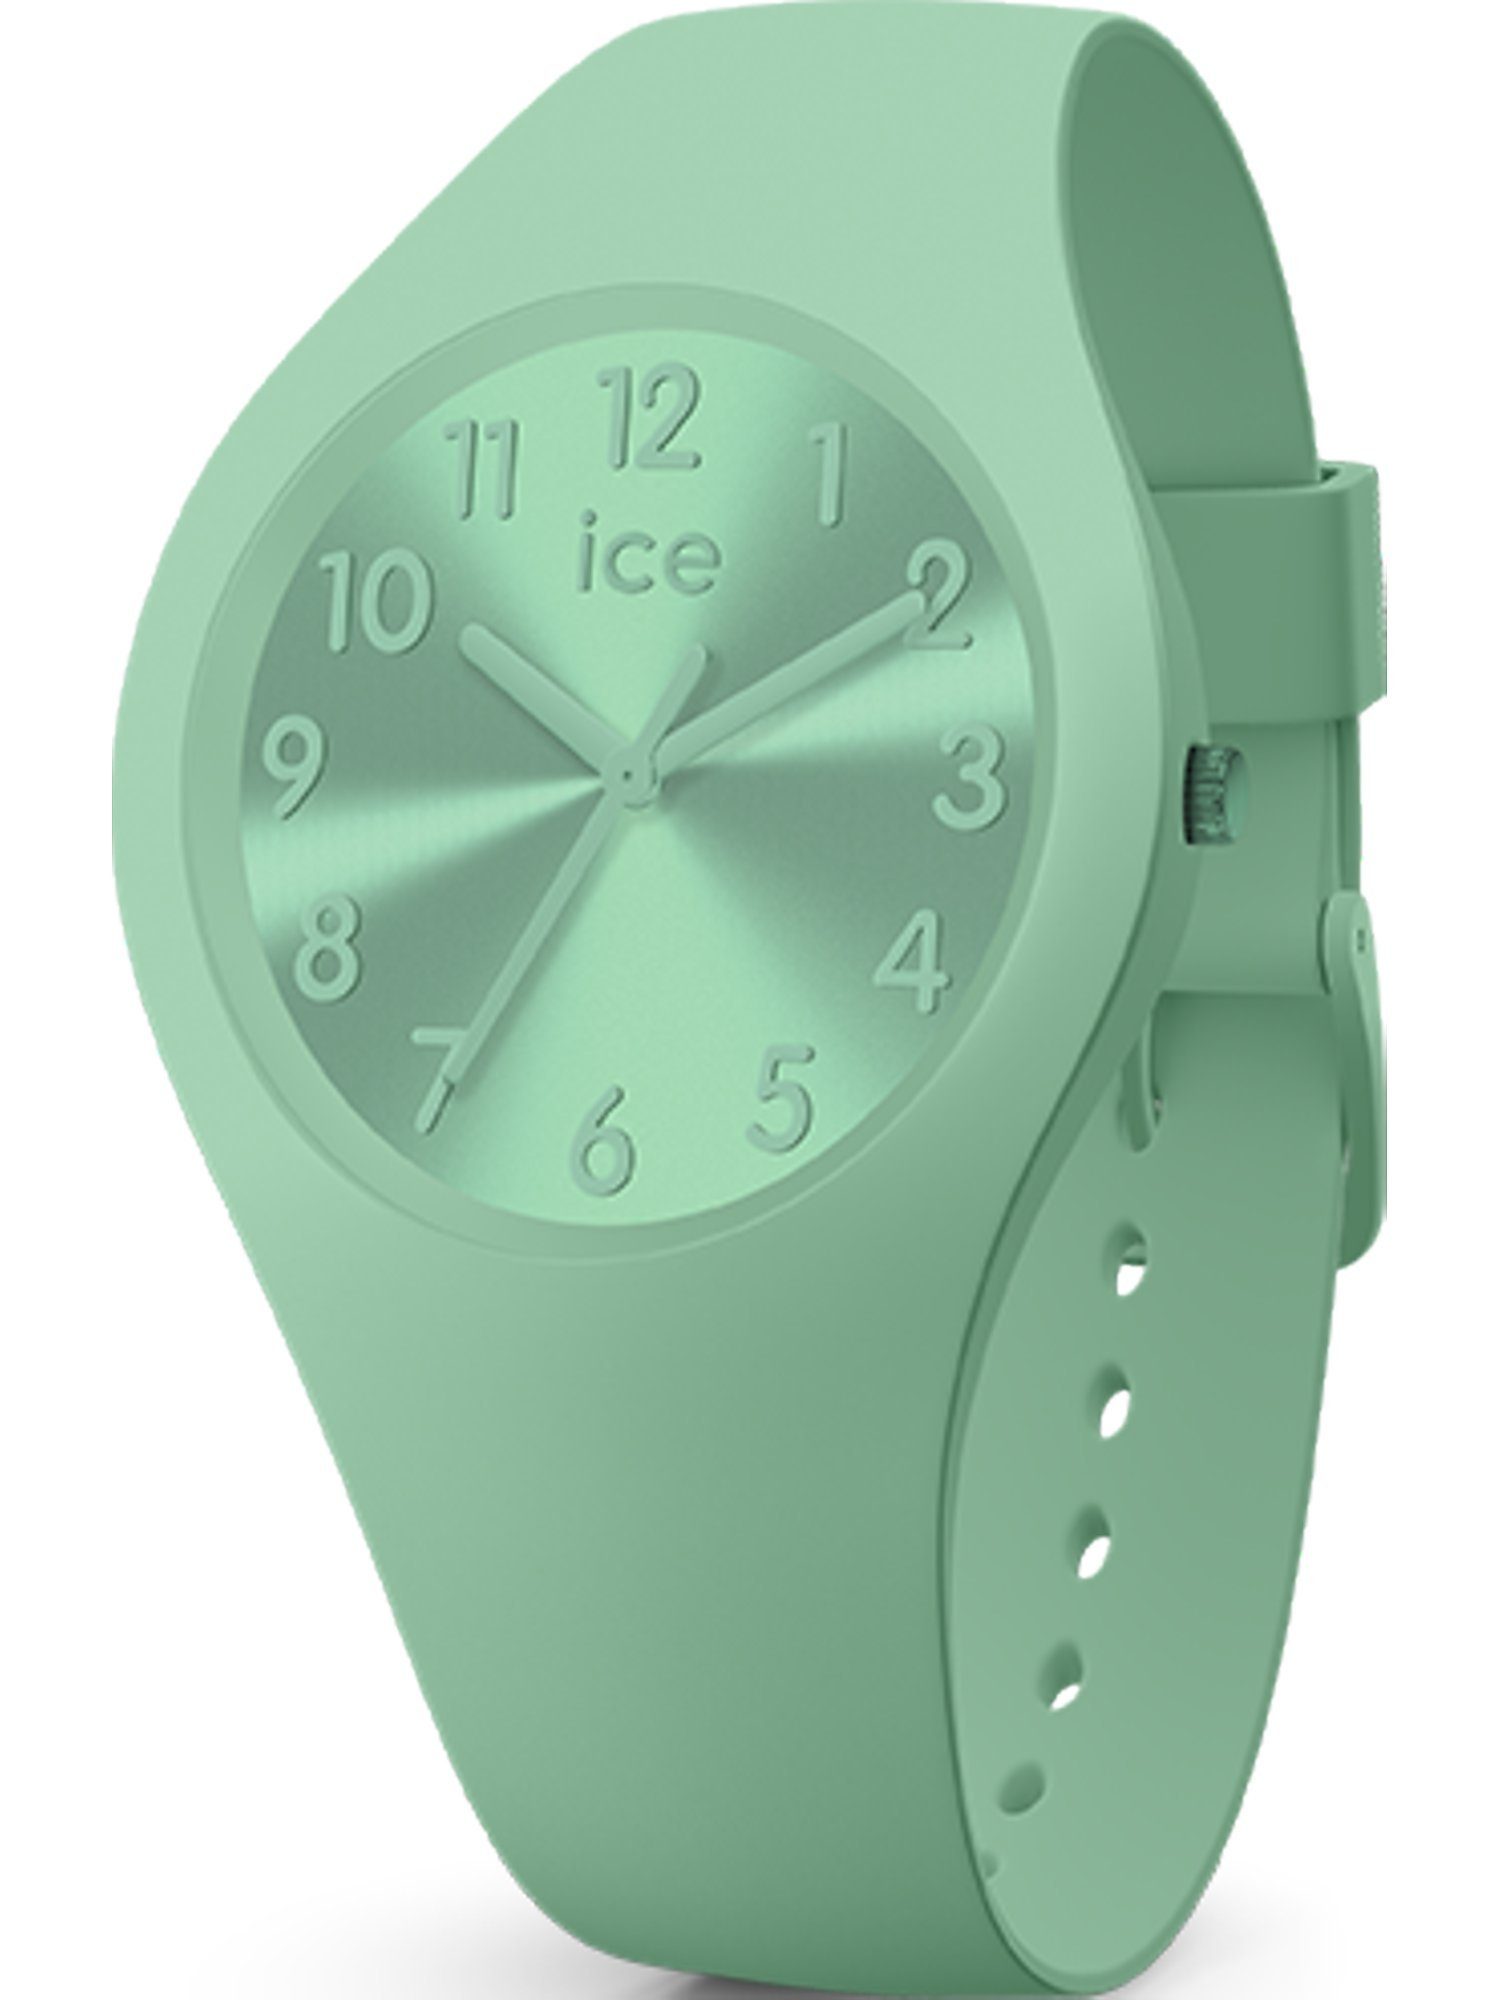 Watch Quarz grün ICE ice-watch Quarzuhr Analog Unisex-Uhren